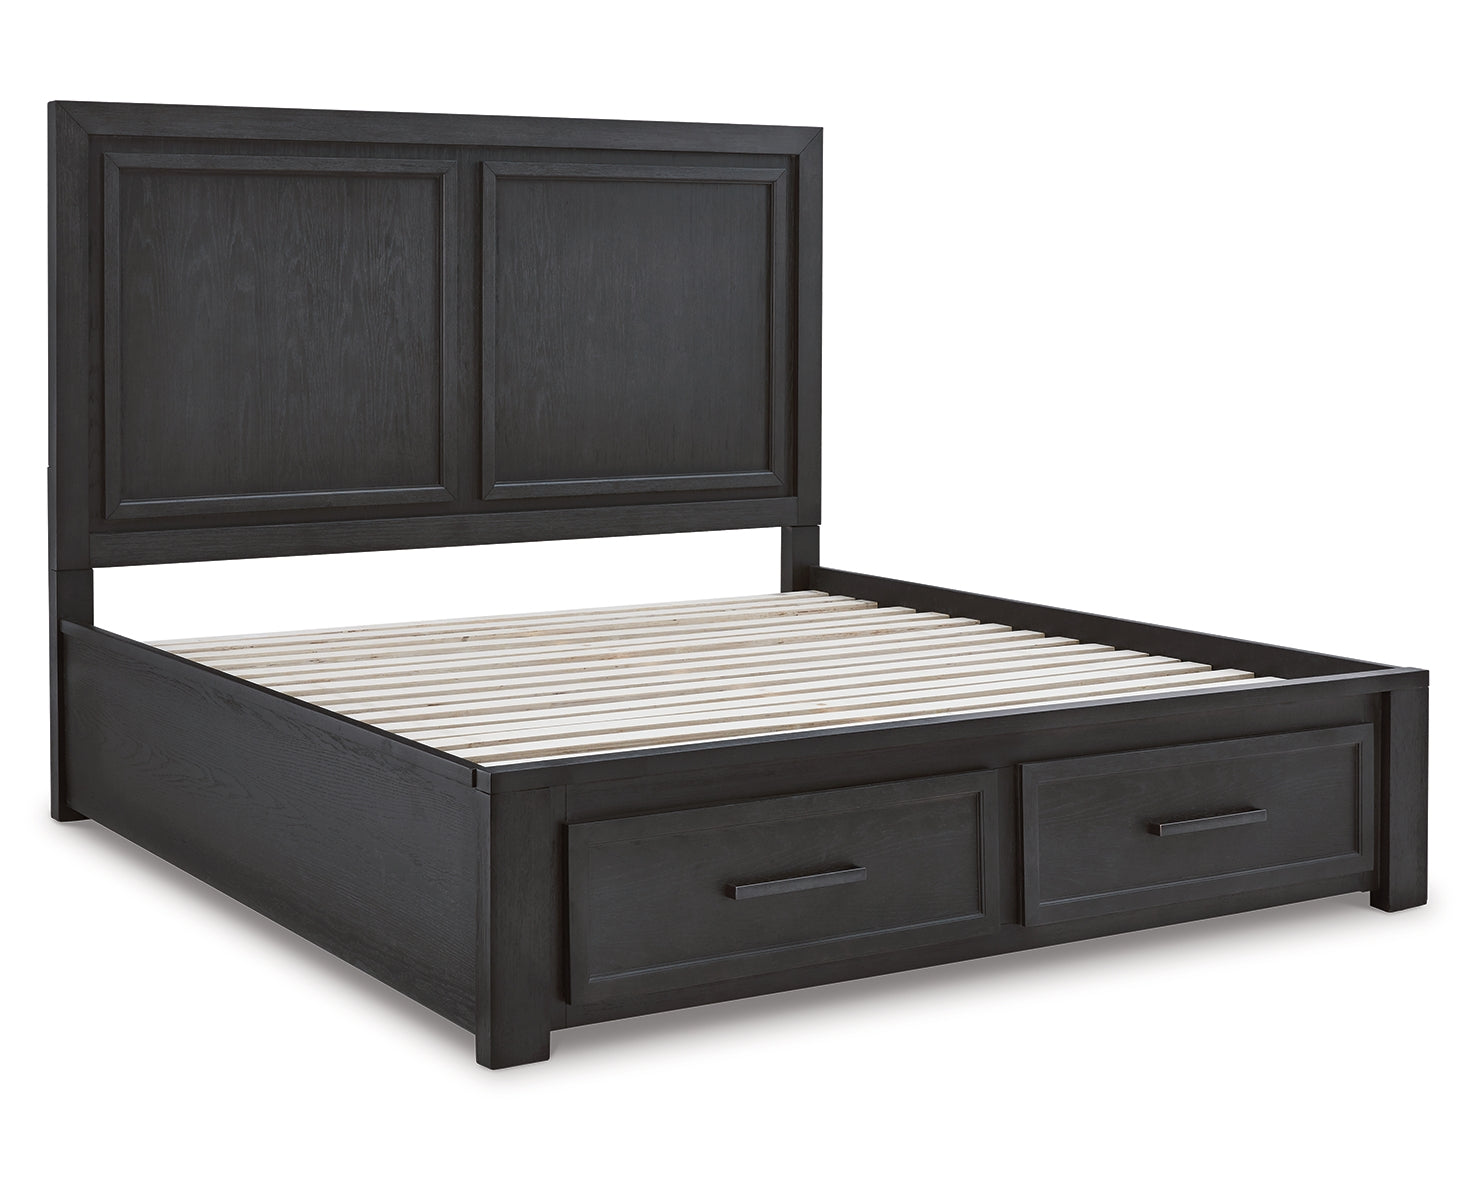 Foyland Queen Panel Storage Bed with Dresser